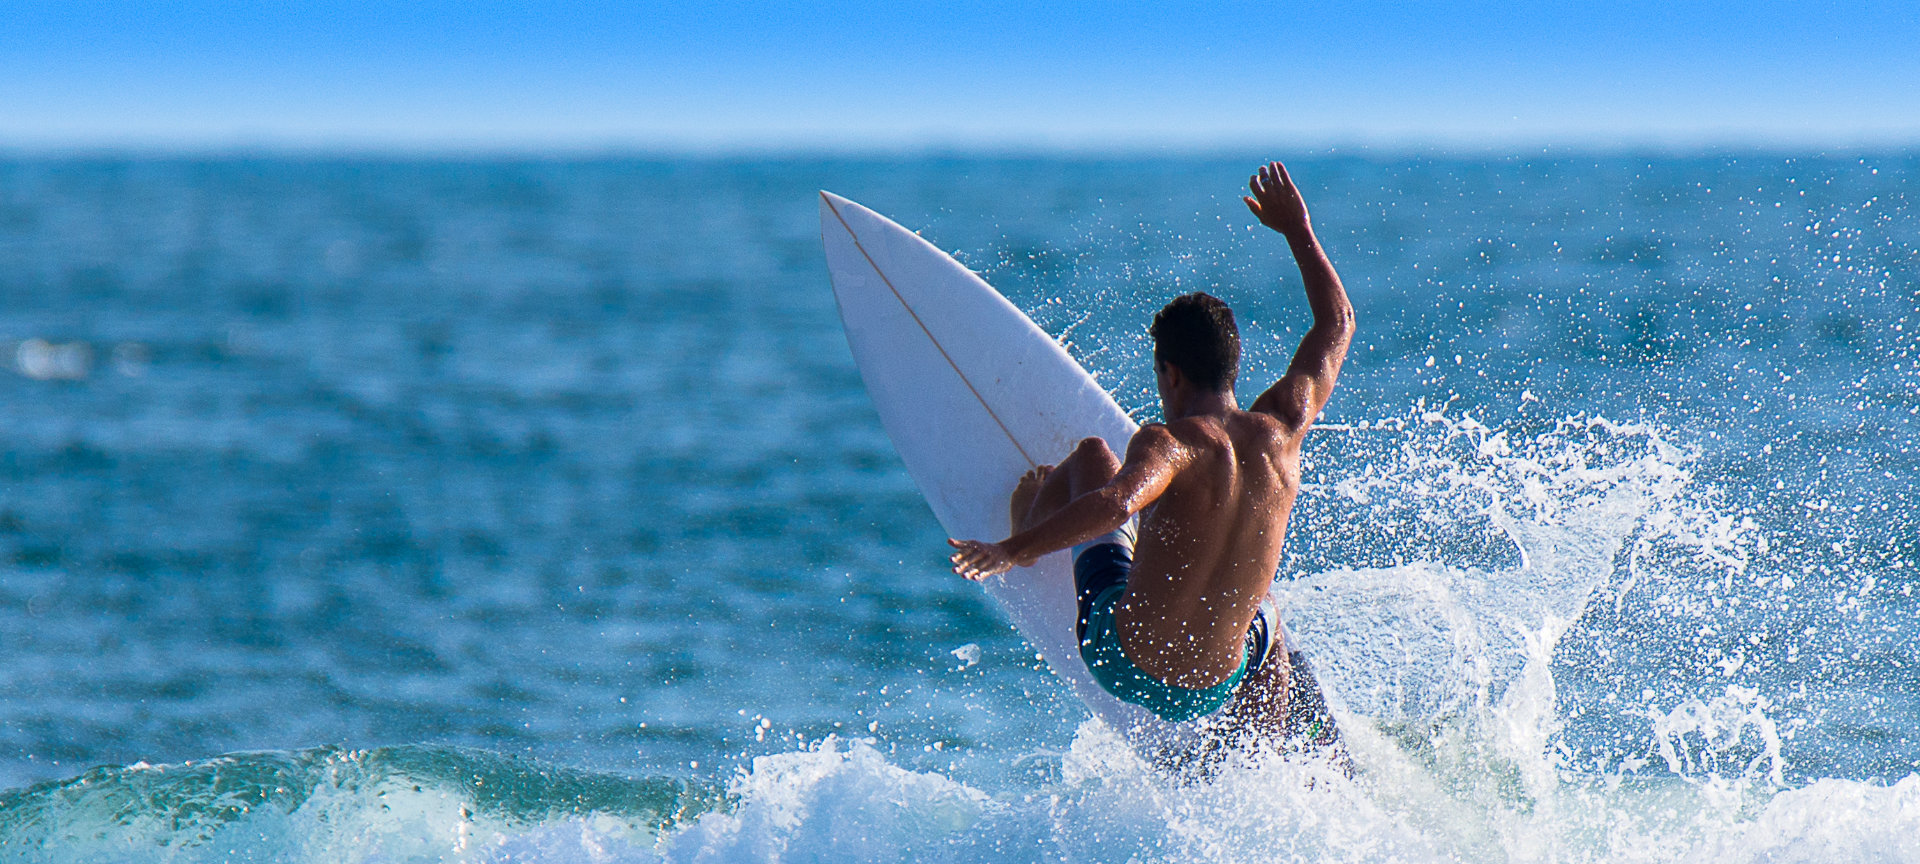 Surfer bei einer 180º-Drehung auf der Welle